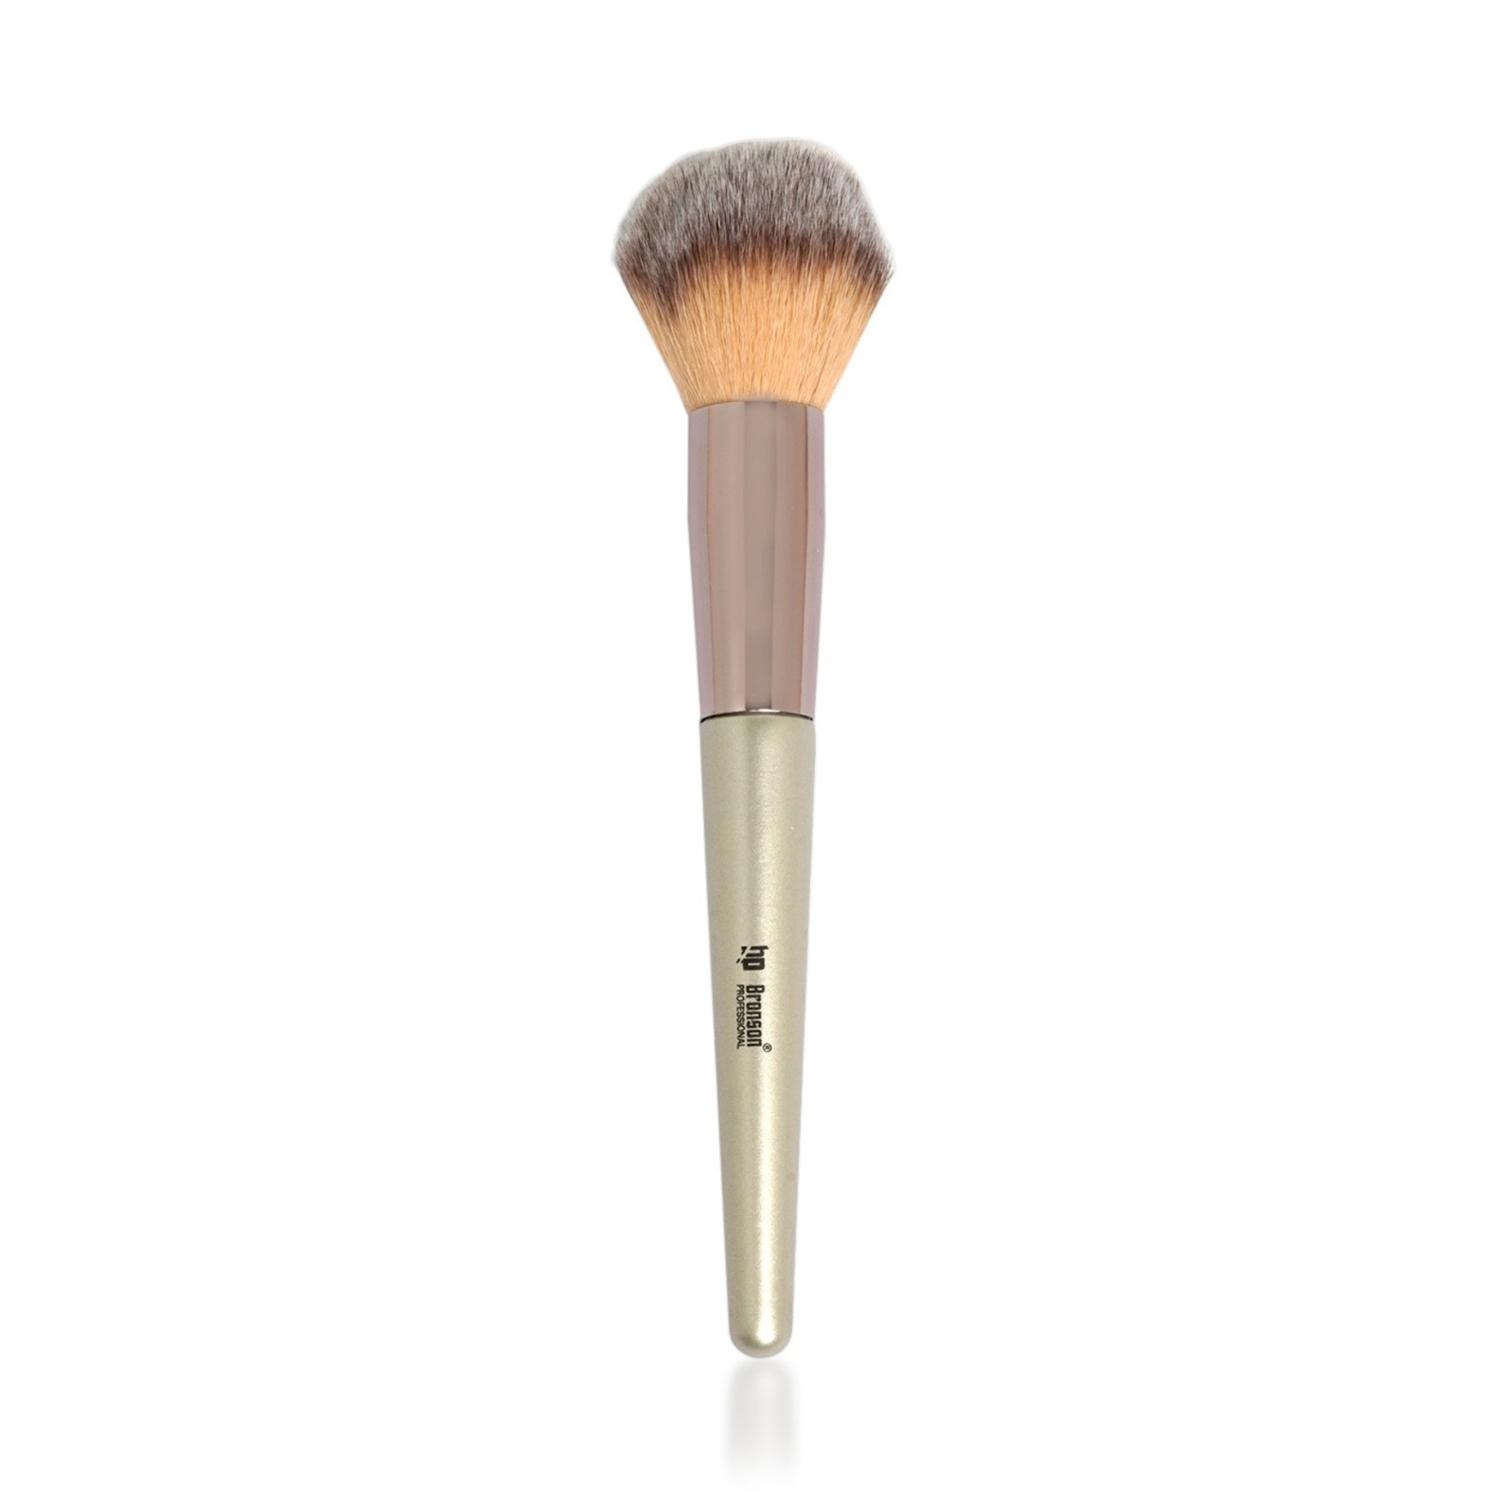 Bronson Professional | Bronson Professional Classic Fat Powder Makeup Brush - Silver, Pink